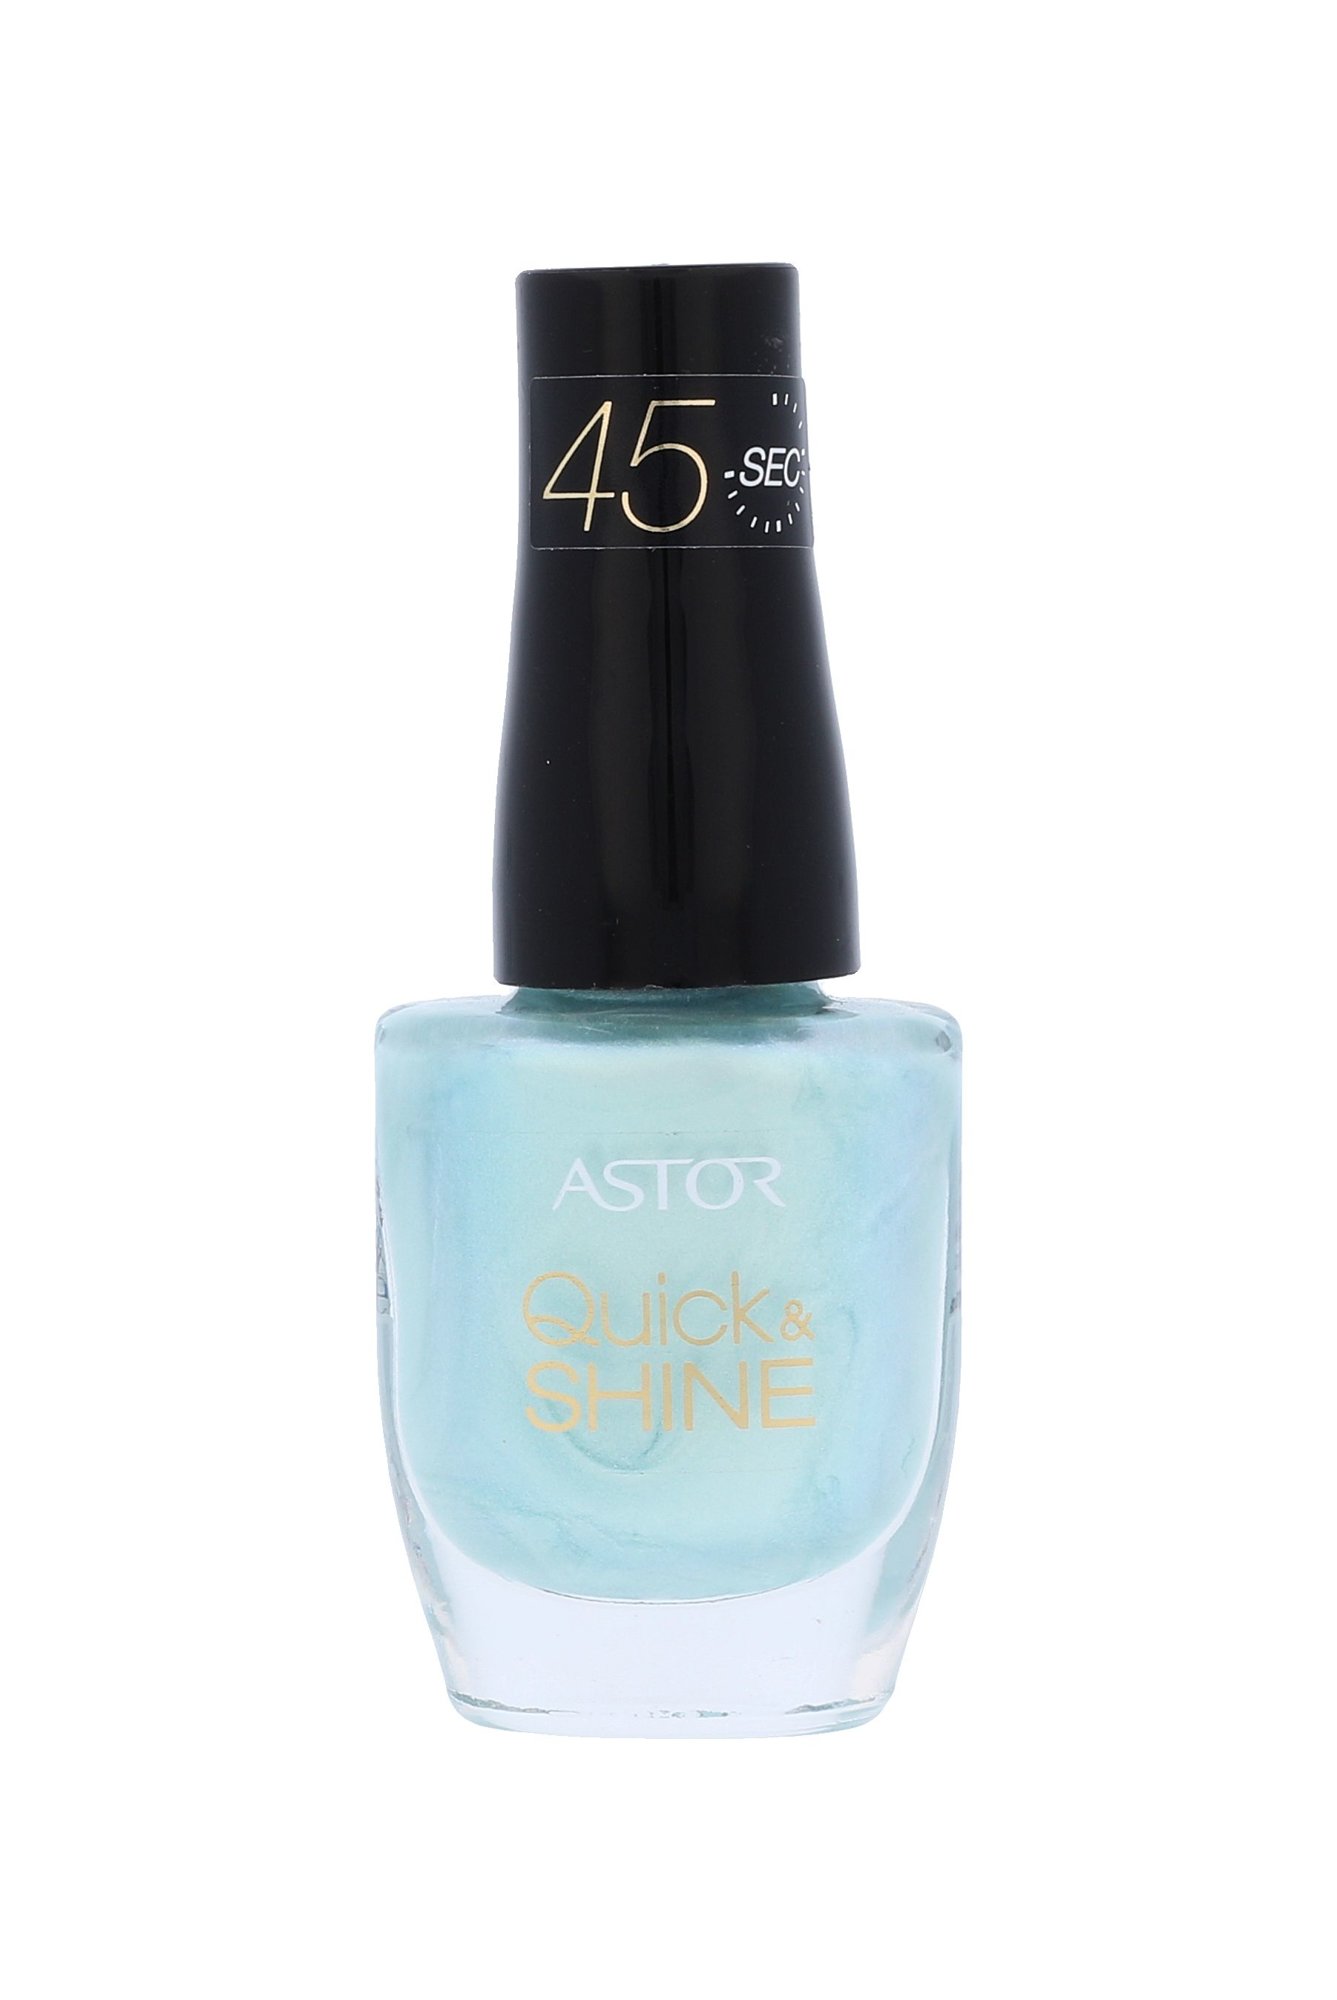 Astor Quick & Shine 8ml nagų lakas